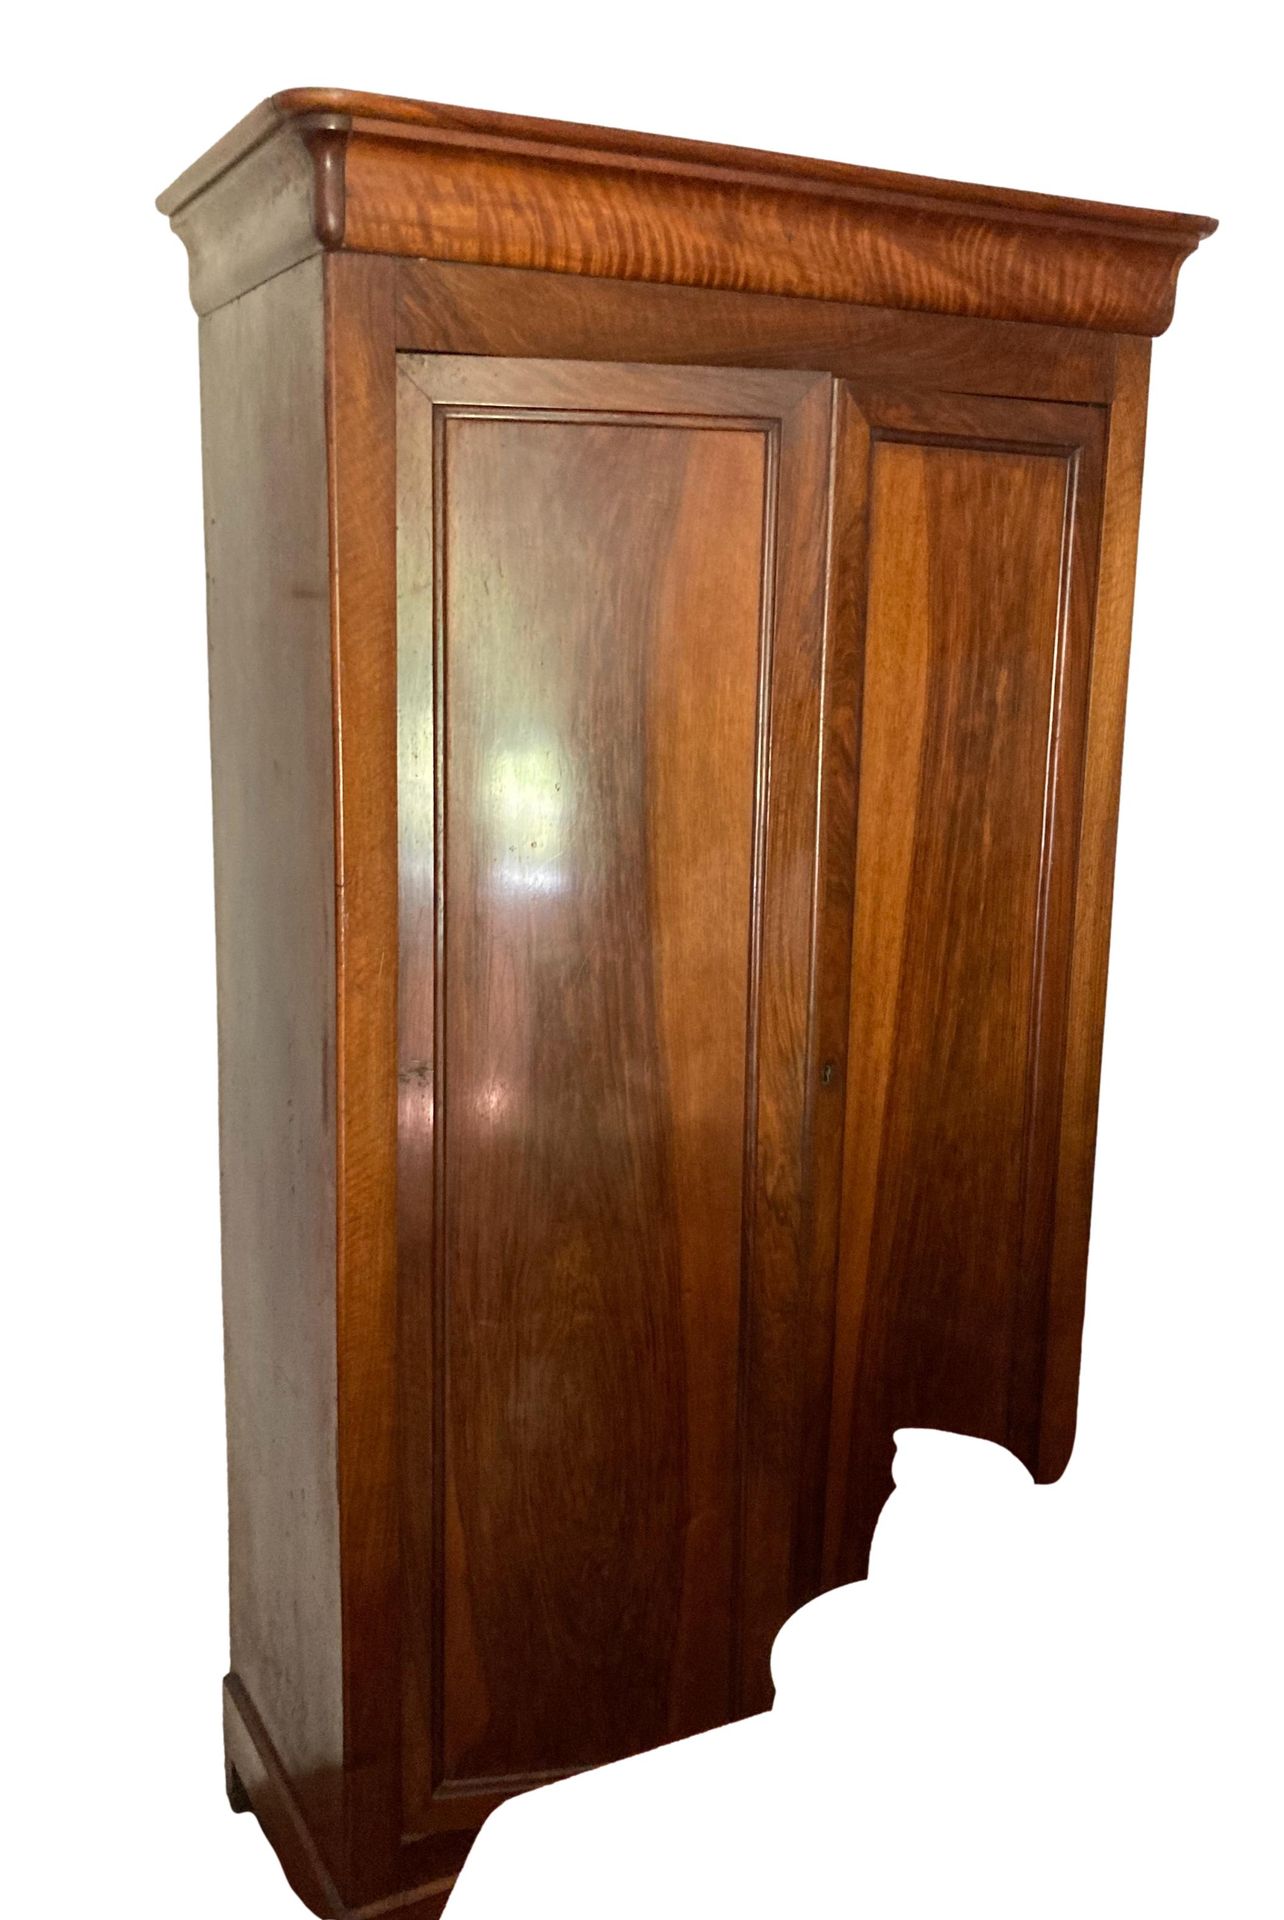 Null Apertura de armario de madera moldeada y patinada con dos puertas

Período &hellip;